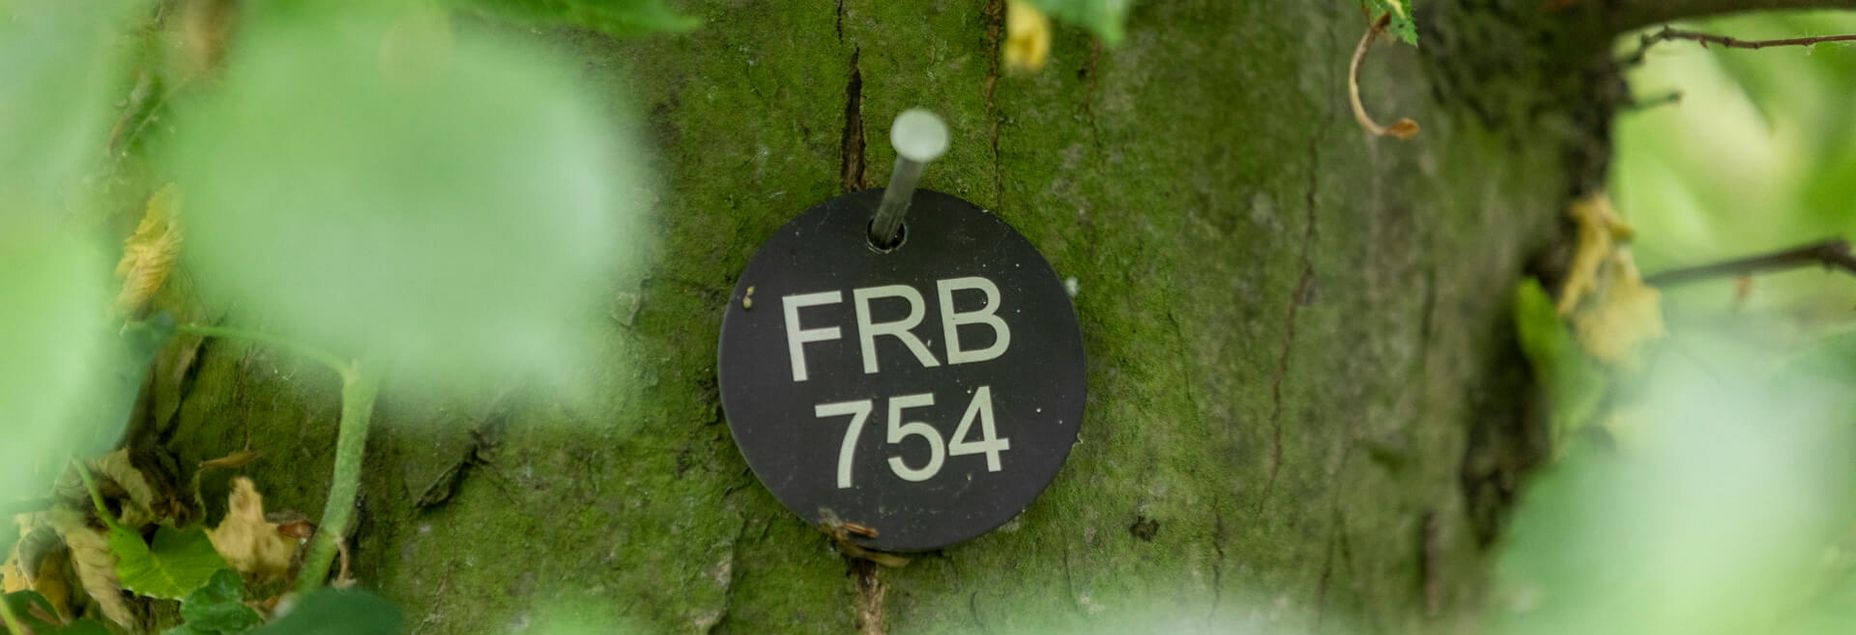 FRB 754 - Plakette